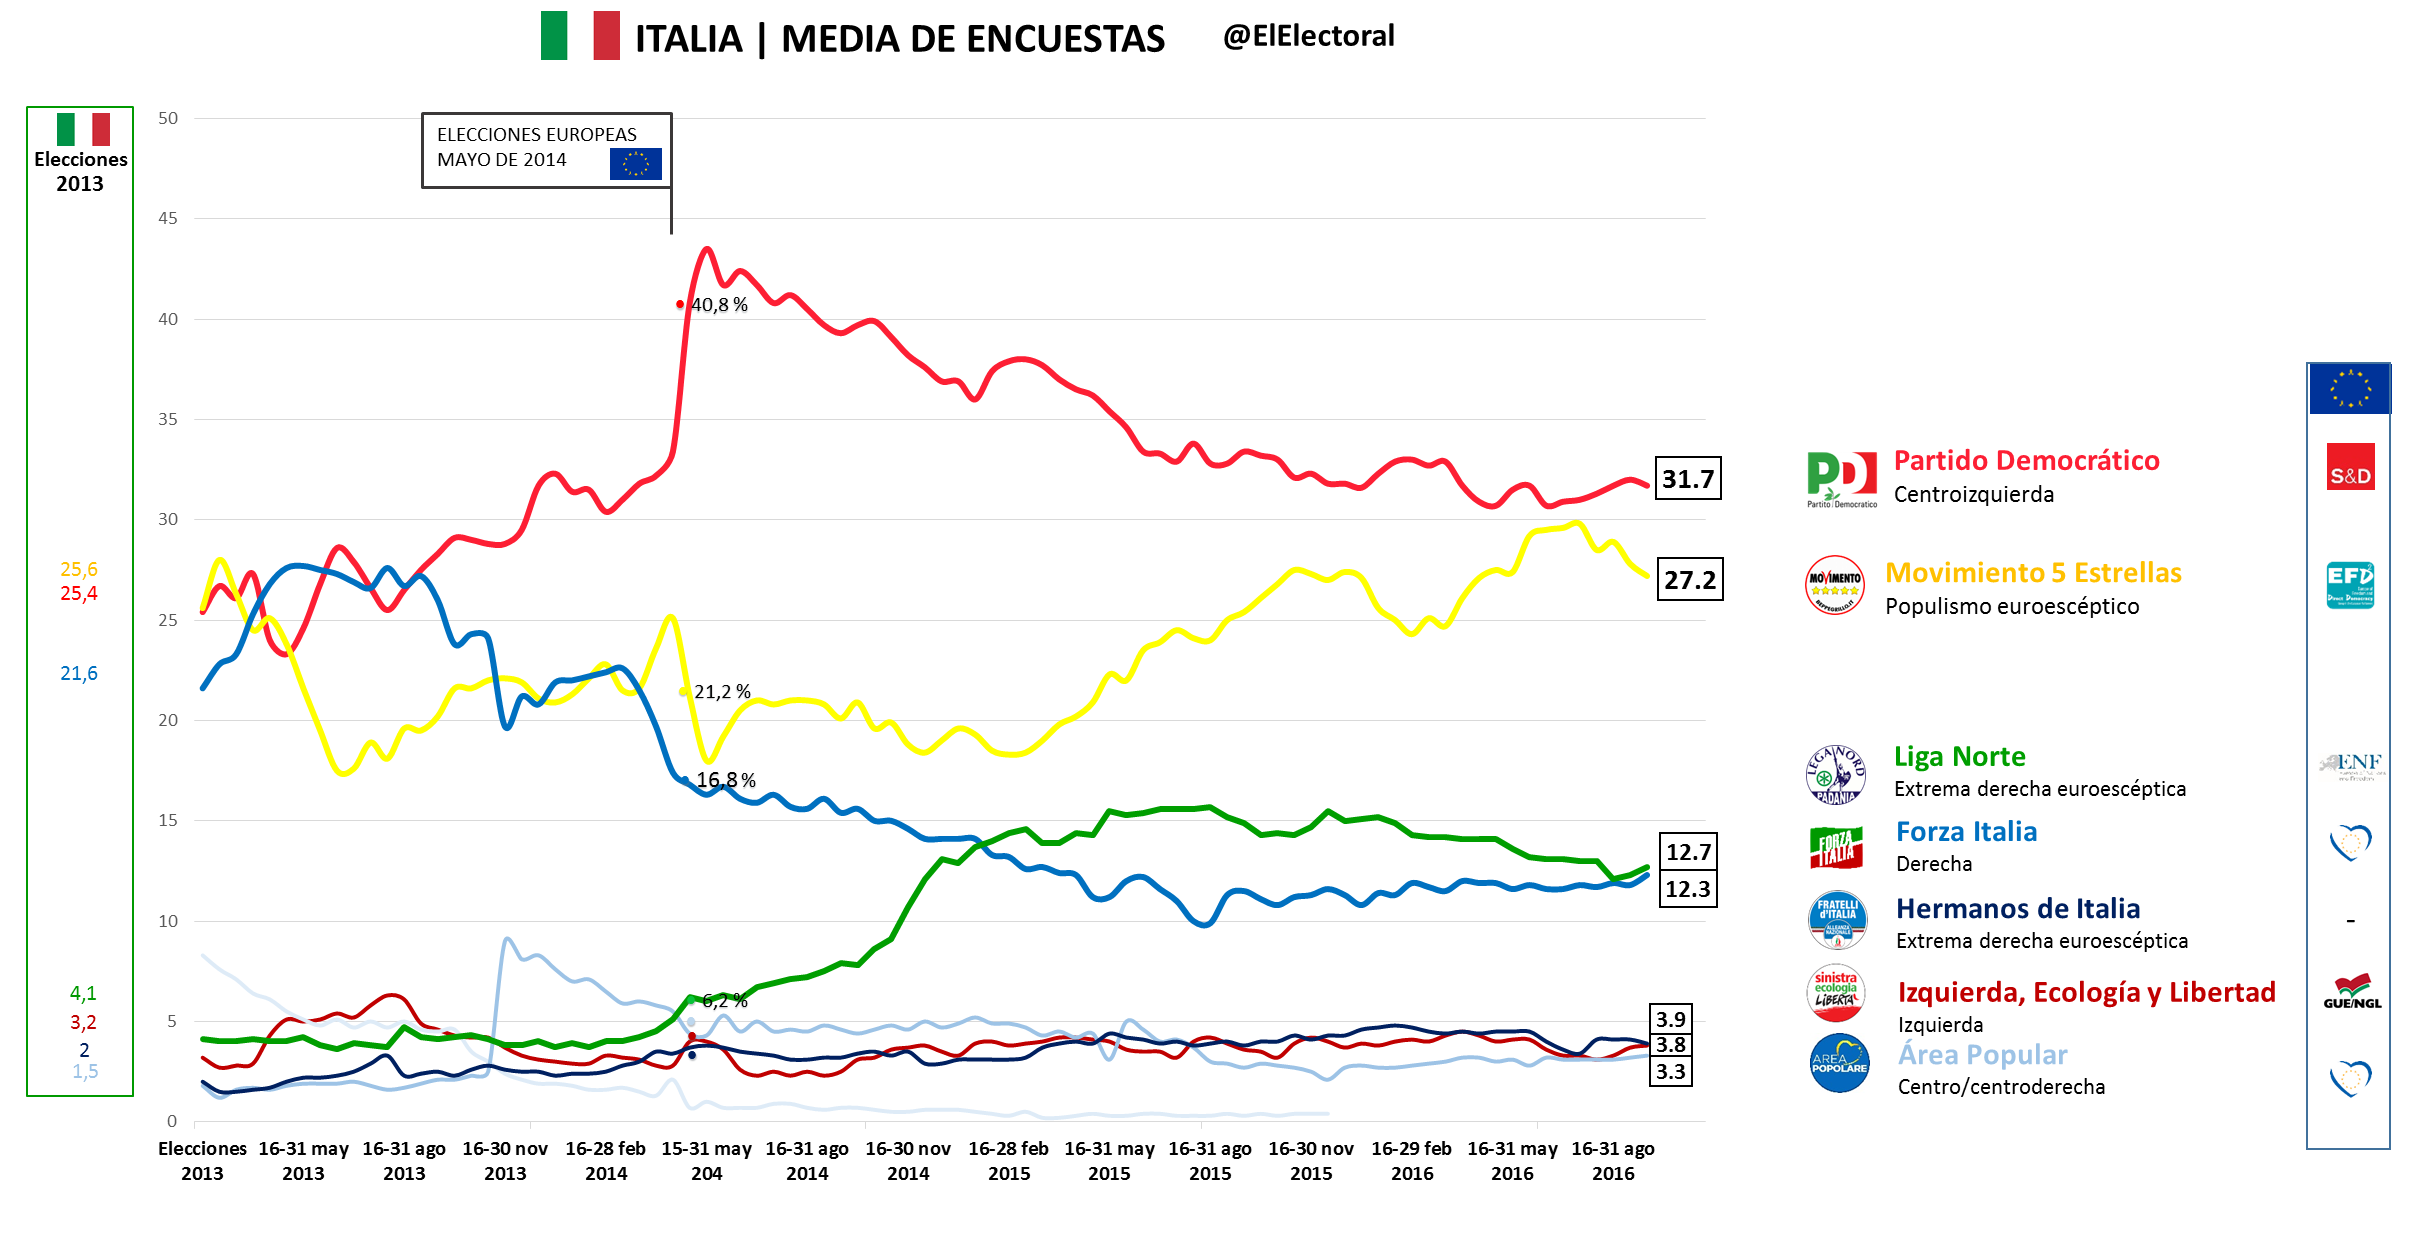 Media de encuestas Italia